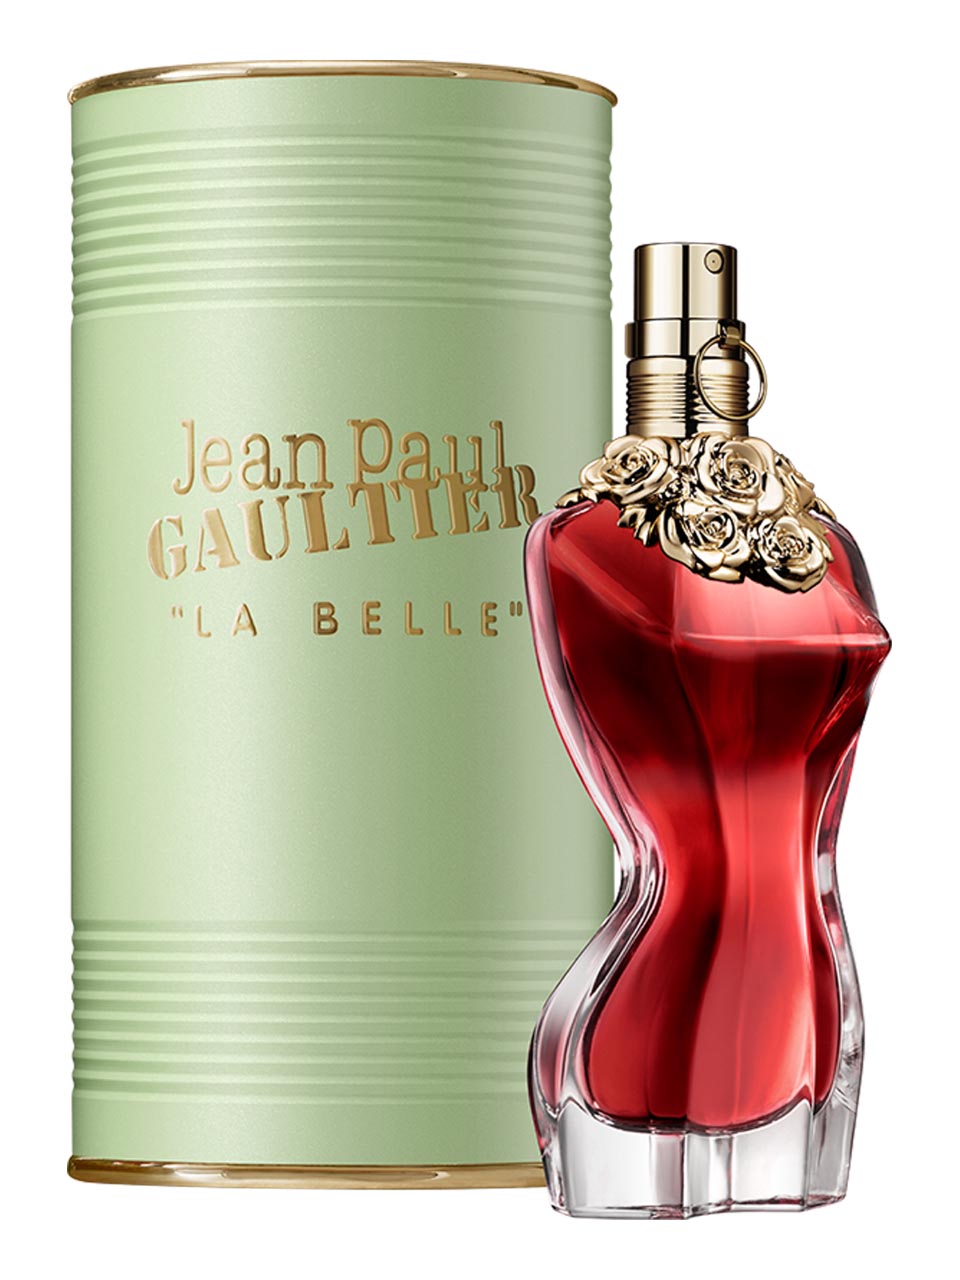 Jean-Paul Gaultier La Belle Eau de Parfum 50 ml null - onesize - 1